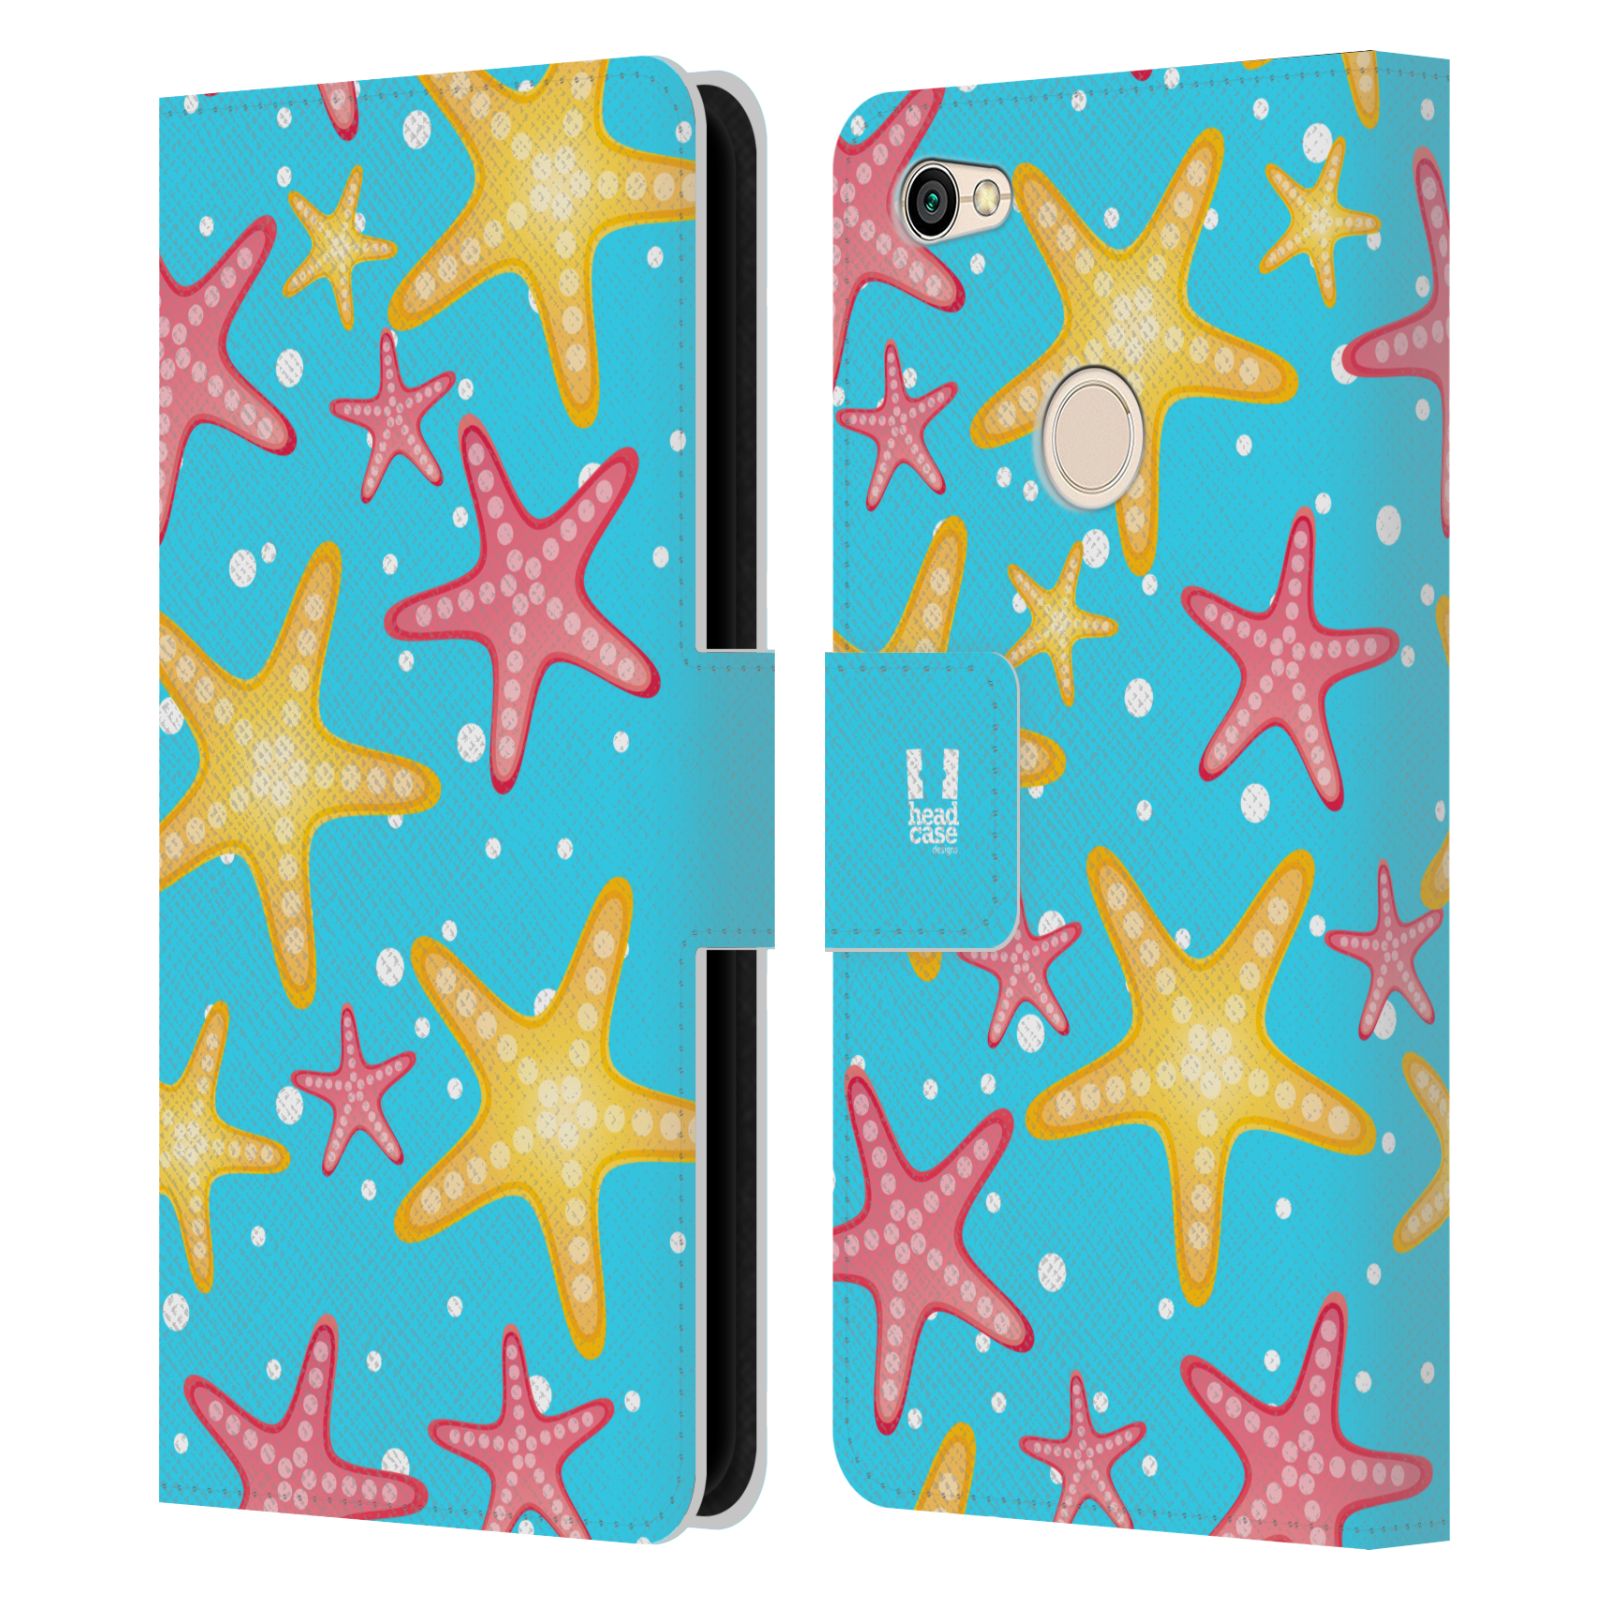 Pouzdro pro mobil Xiaomi Redmi Note 5A - HEAD CASE - Mořský vzor - barevné hvězdy